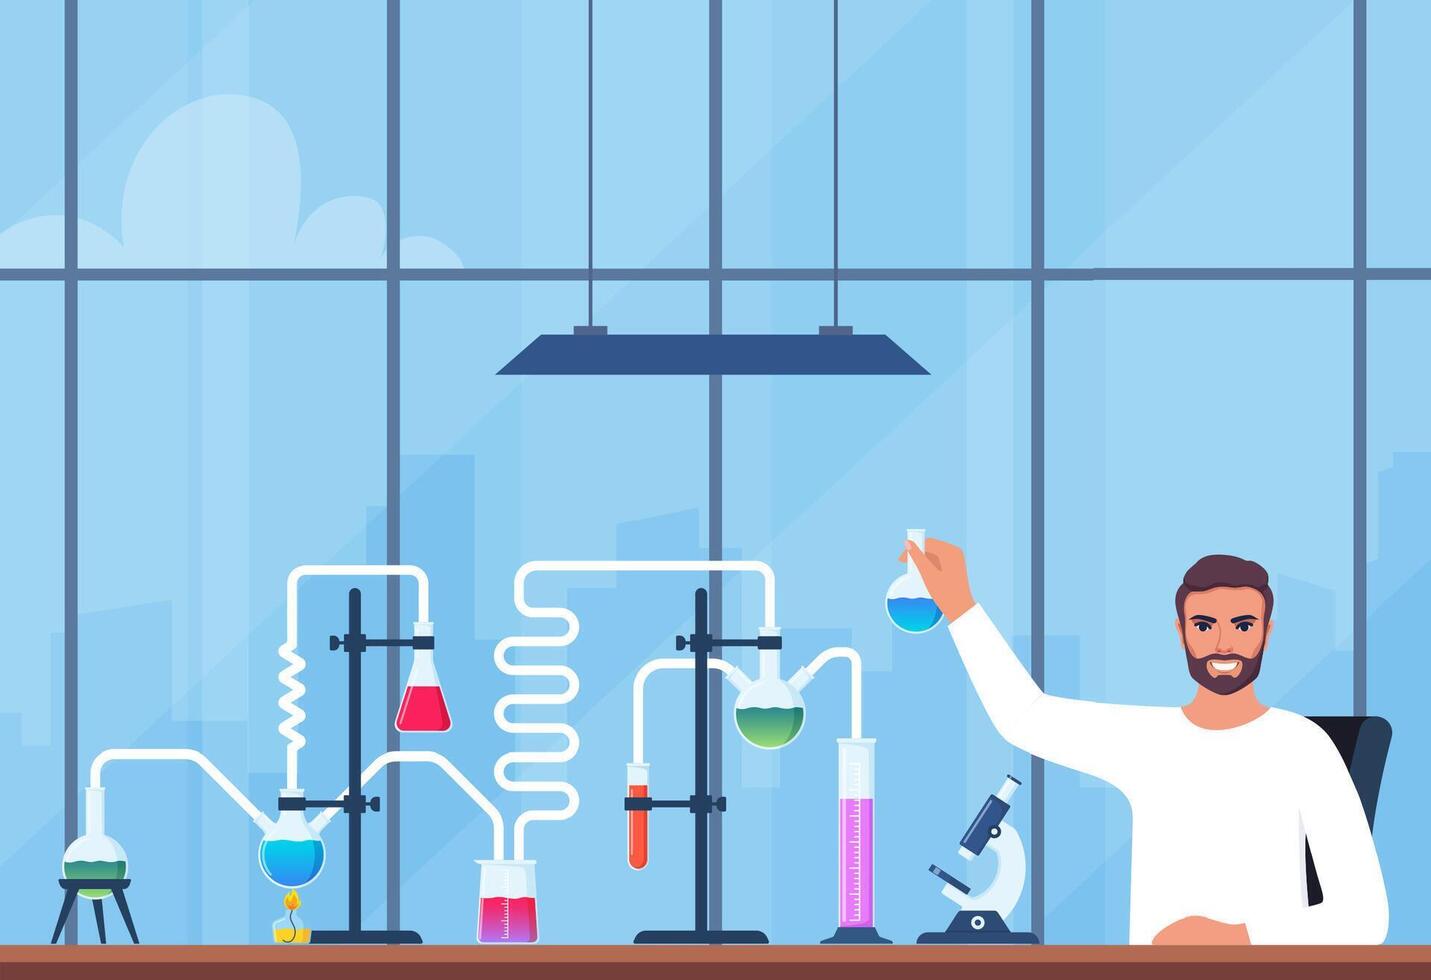 forskare i kemi laboratorium arbetssätt på forskning och utforskning. flaskor, flaskor, testa rör med ämne. labb forskning, testning, studier i kemi. vektor illustration.